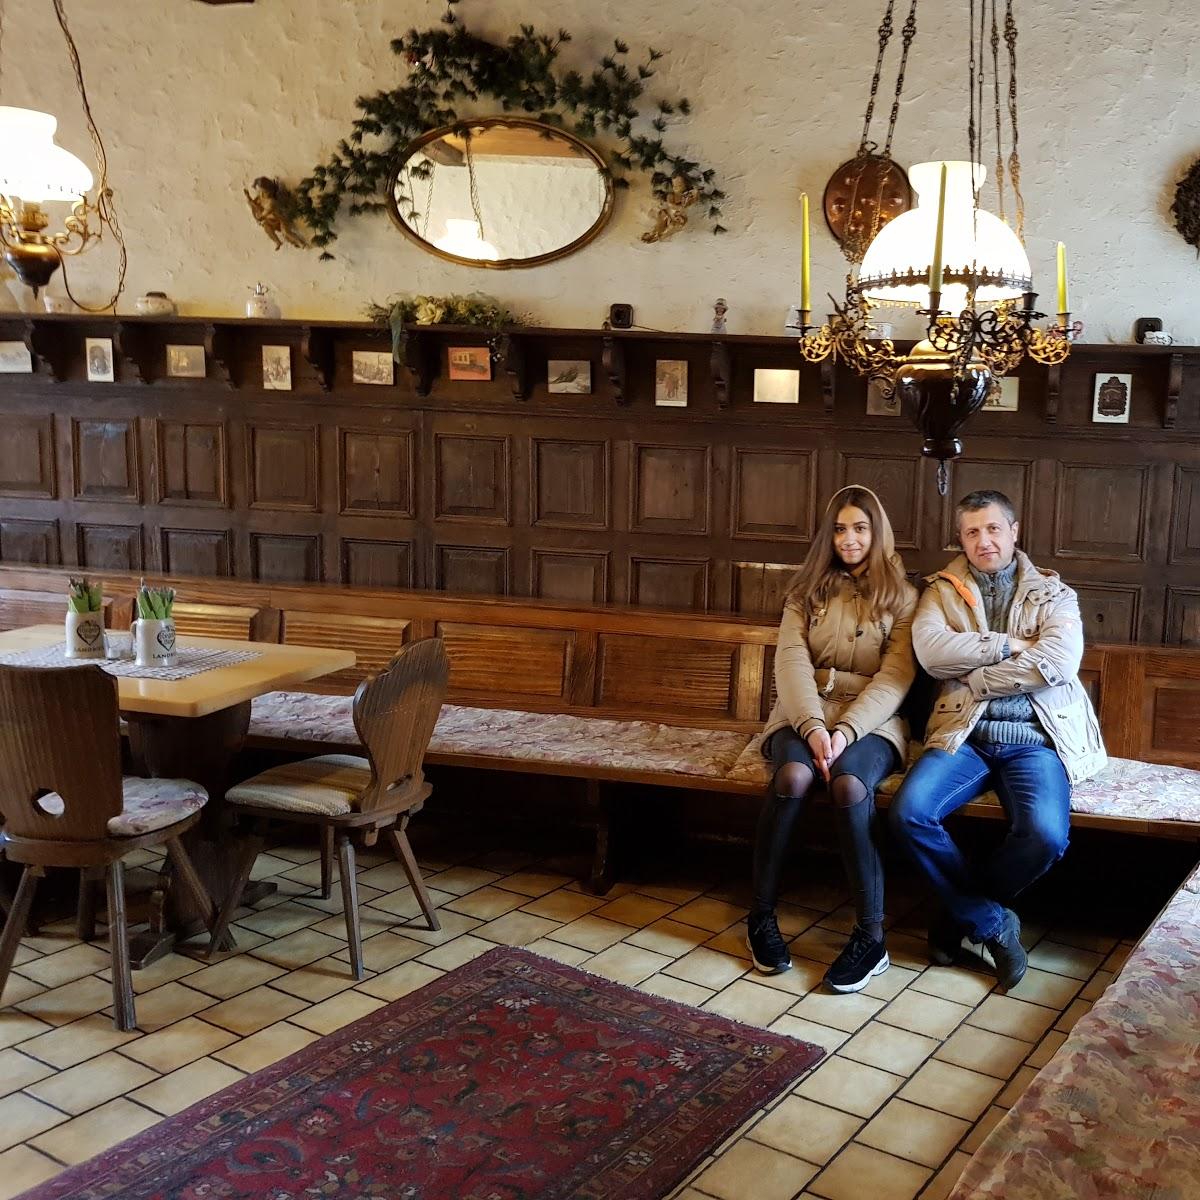 Restaurant "Zur Post" in  Gladenbach